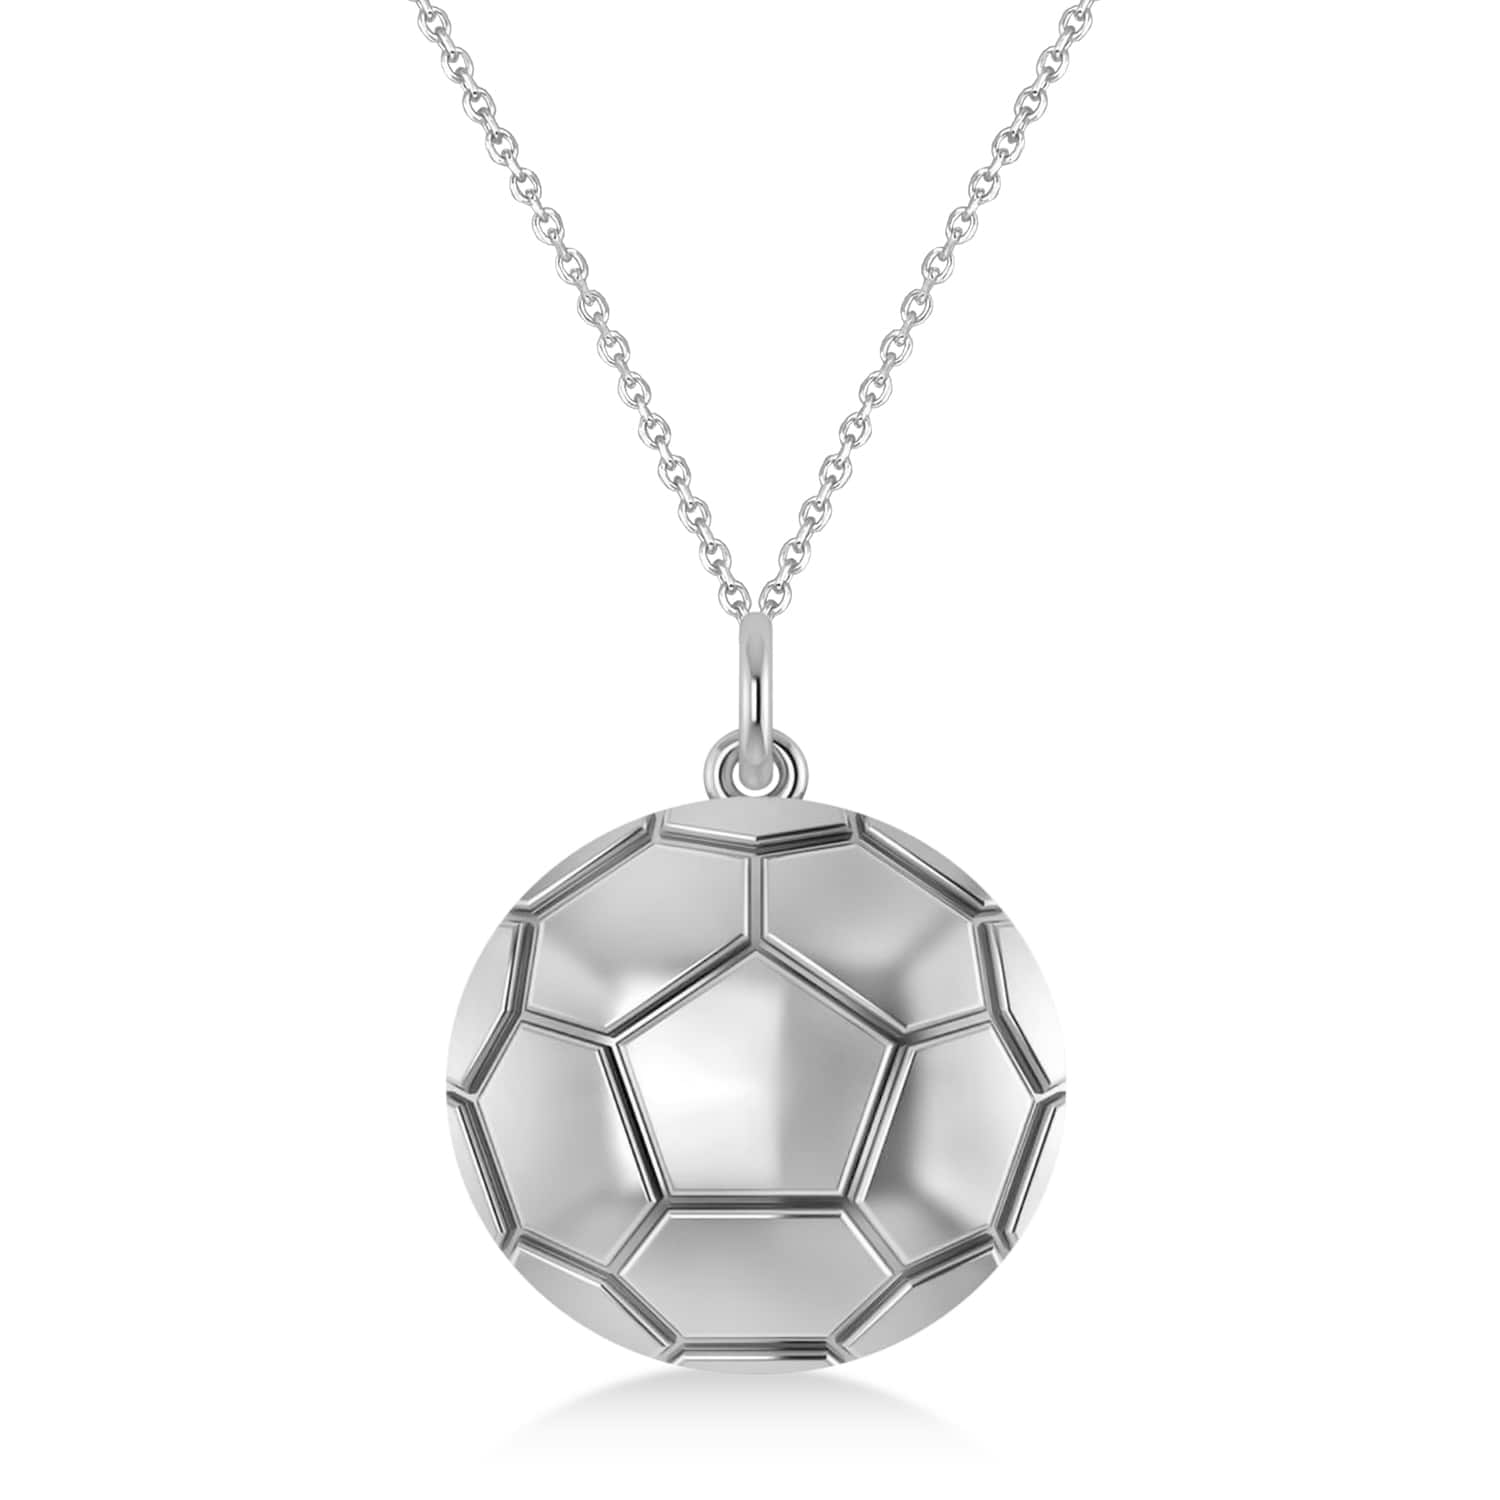 Soccer Ball Charm Men's Pendant Necklace 14K White Gold